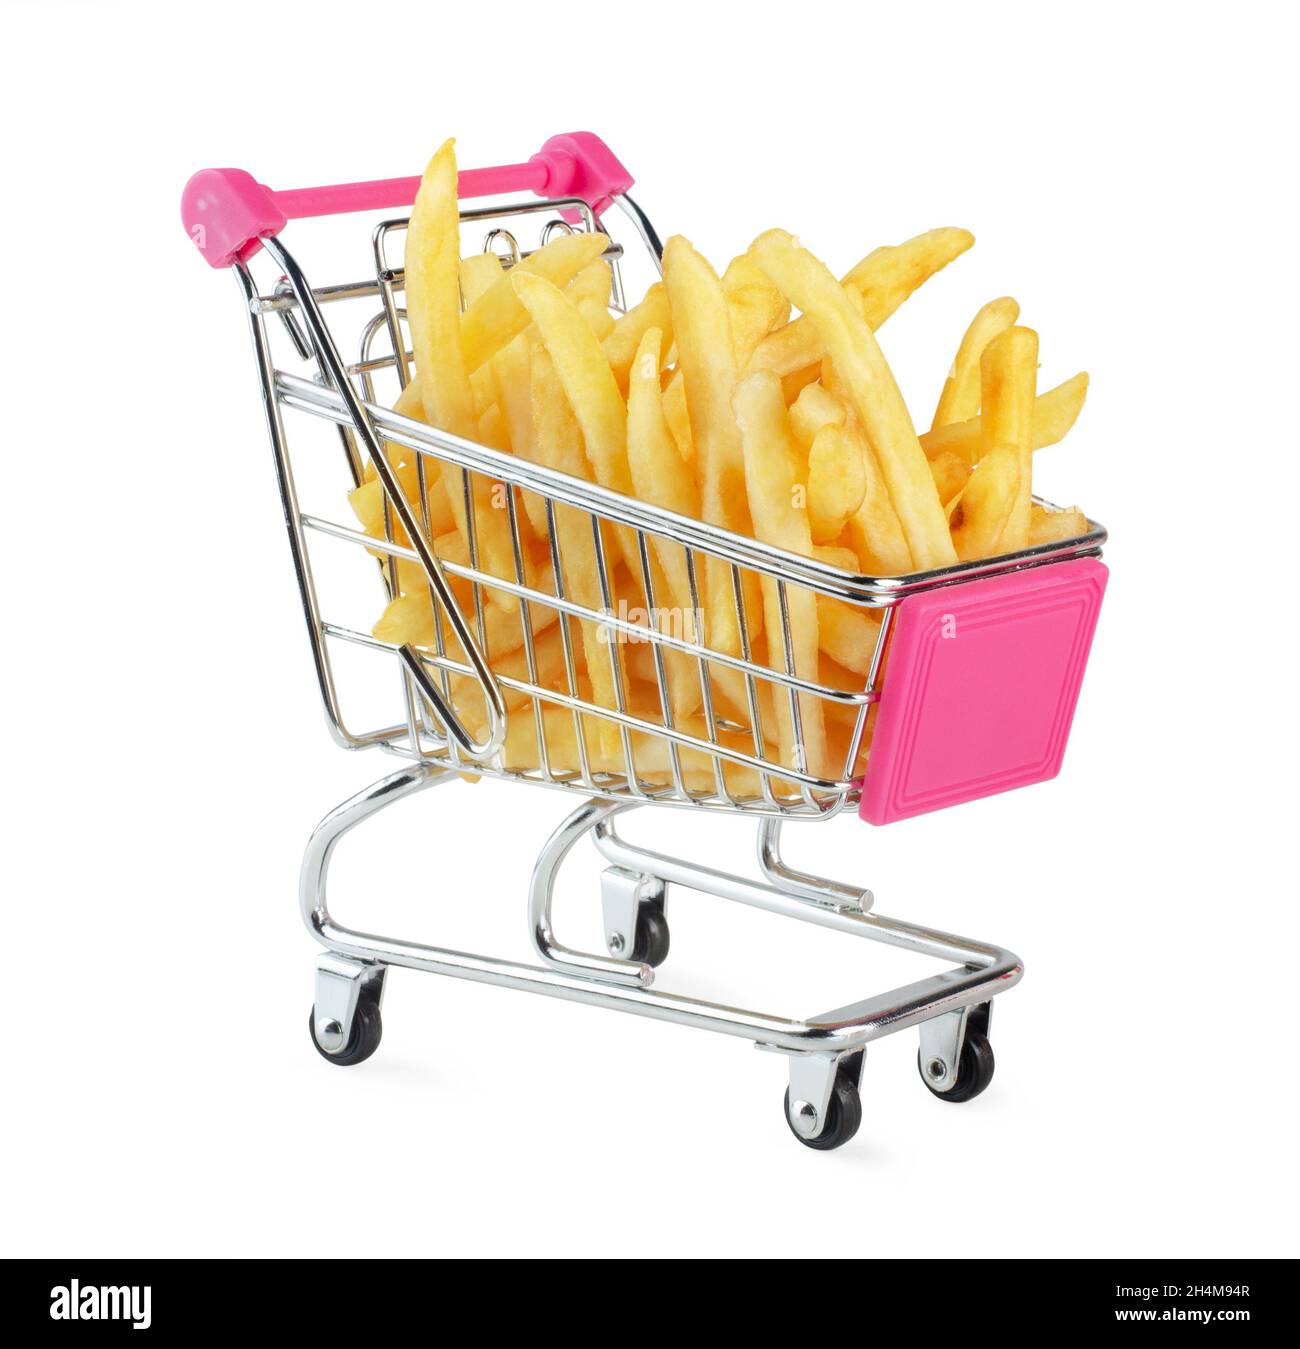 Carrito de compras lleno de patatas fritas sobre fondo blanco aislado Foto de stock